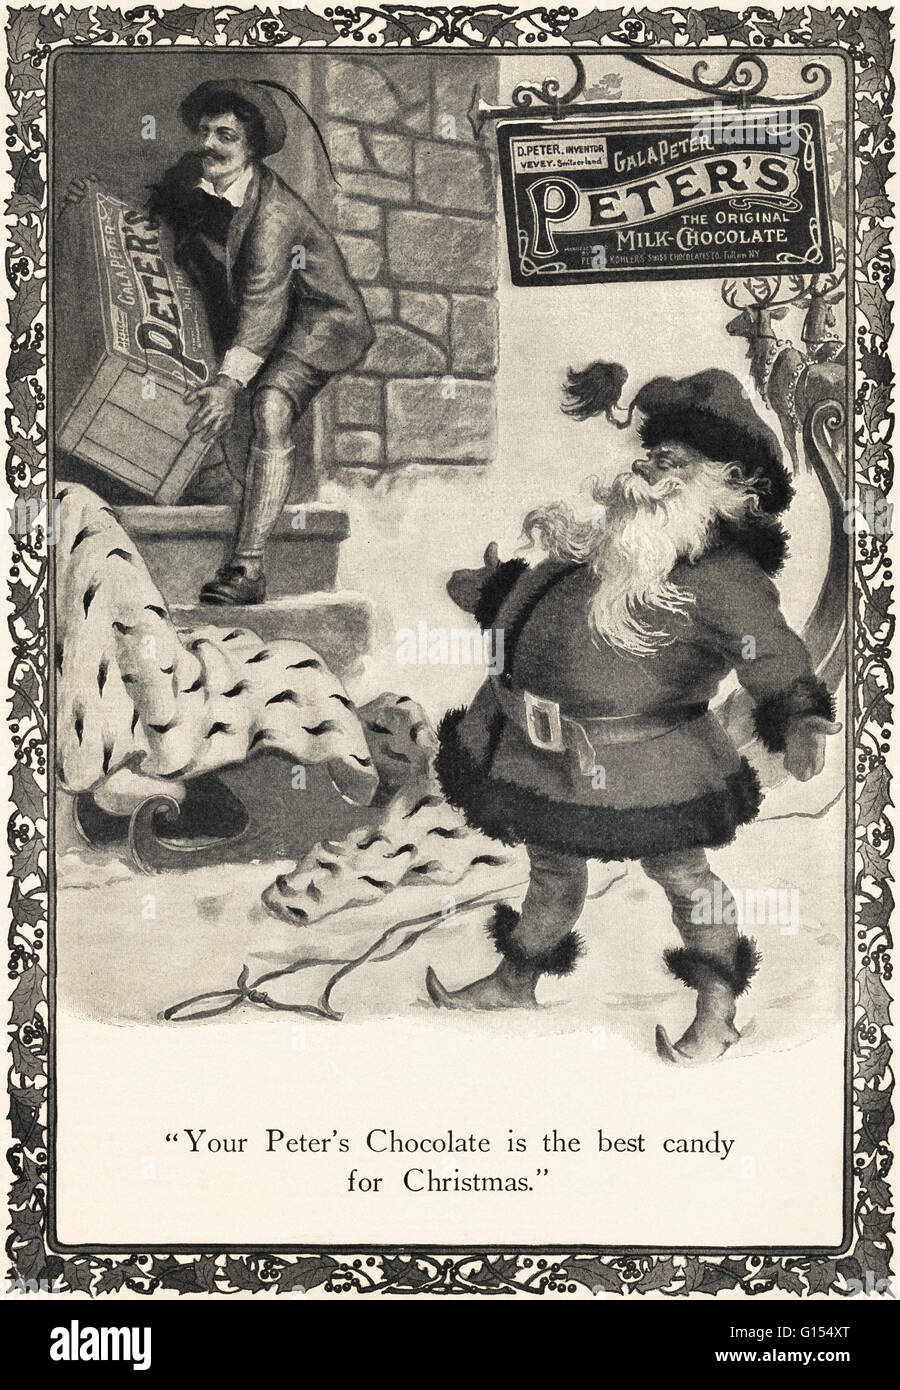 Old vintage original magazine américain annonce à partir de l'époque édouardienne datée 1910. Publicité Publicité Peter's chocolat au lait pour Noël Banque D'Images